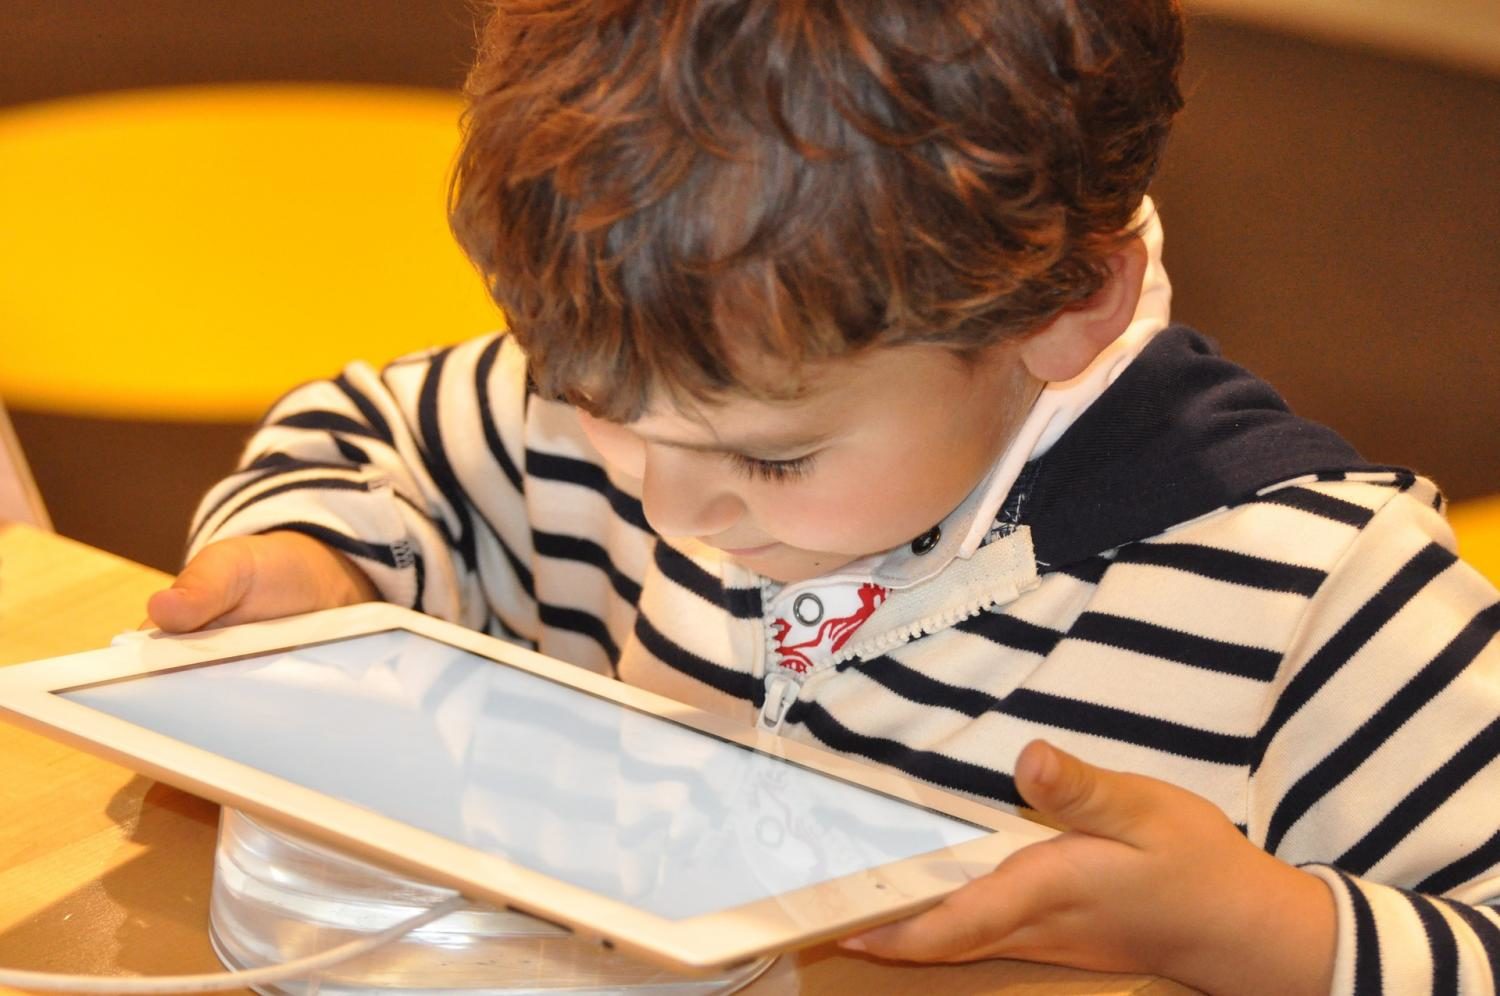 children screen addiction, speech delays handheld devices